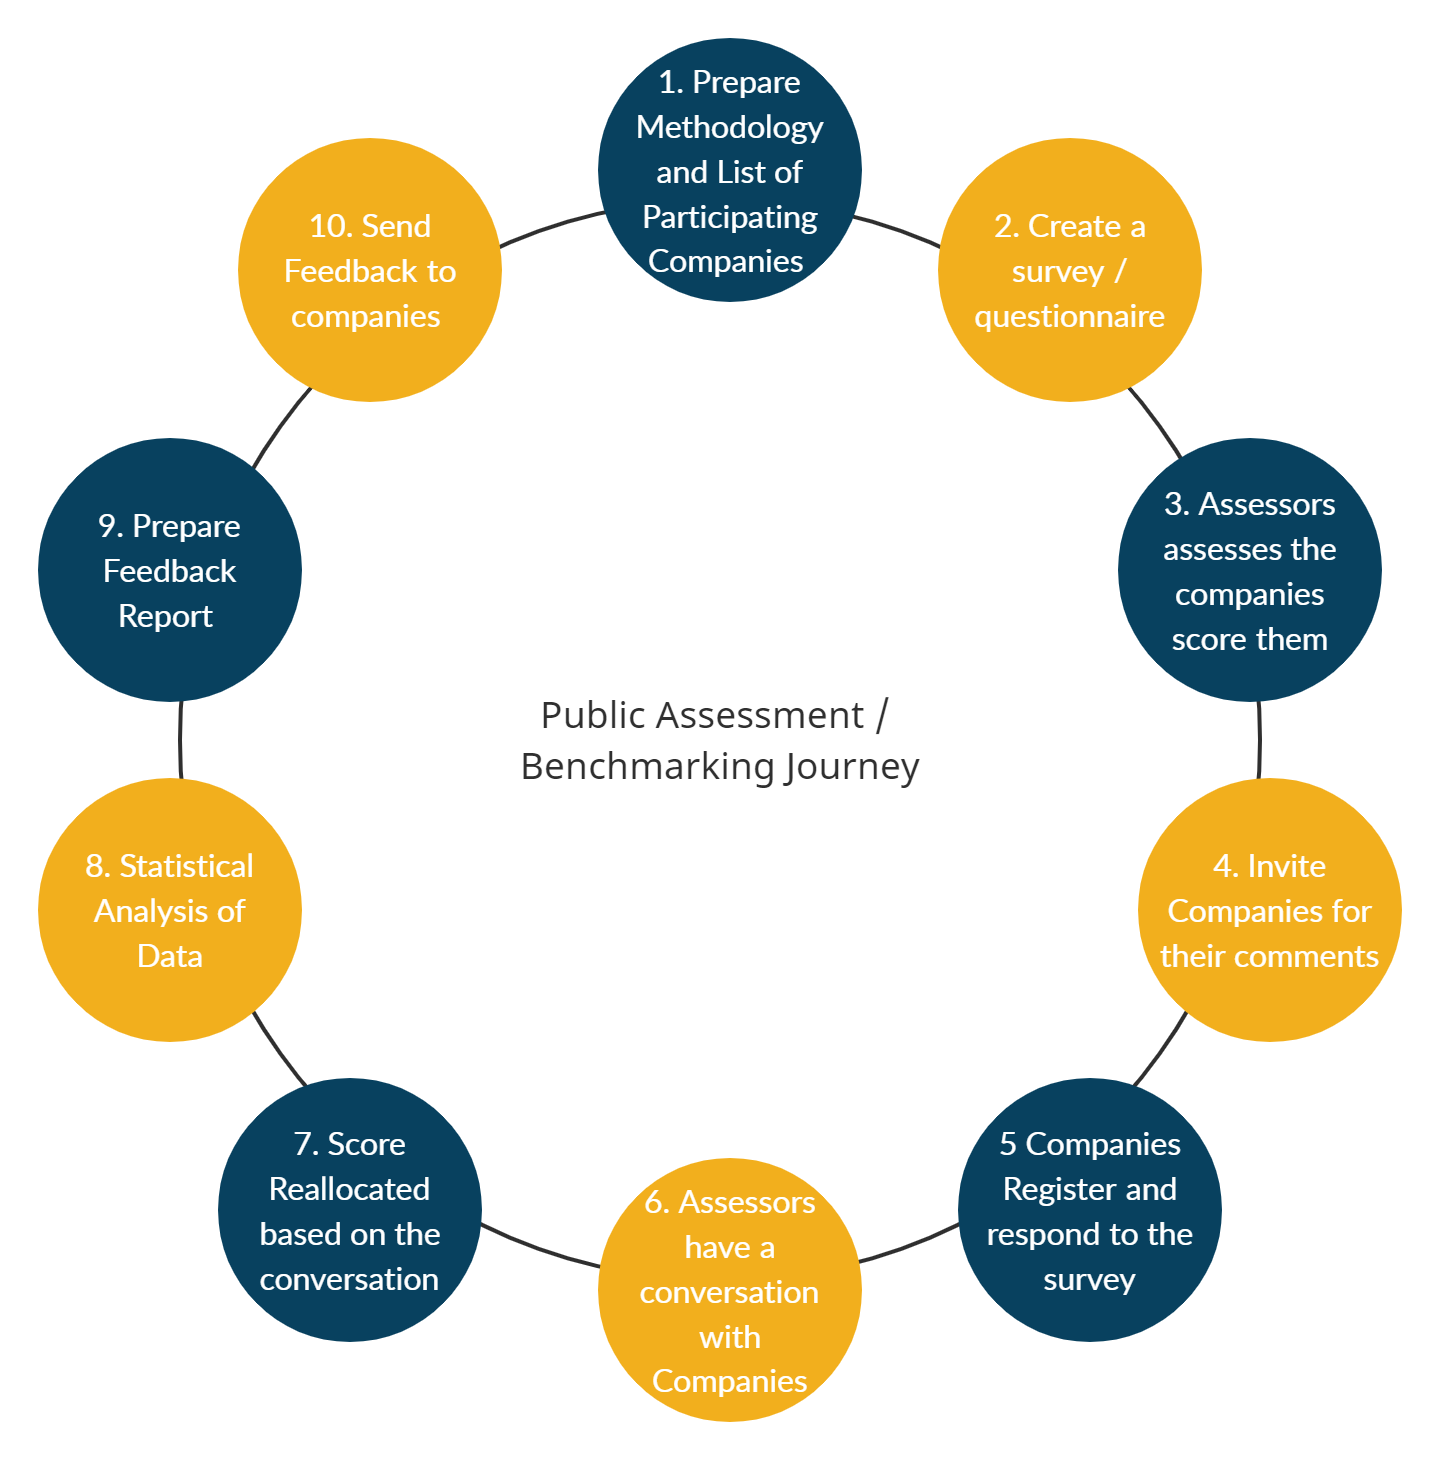 Public Assessment Journey